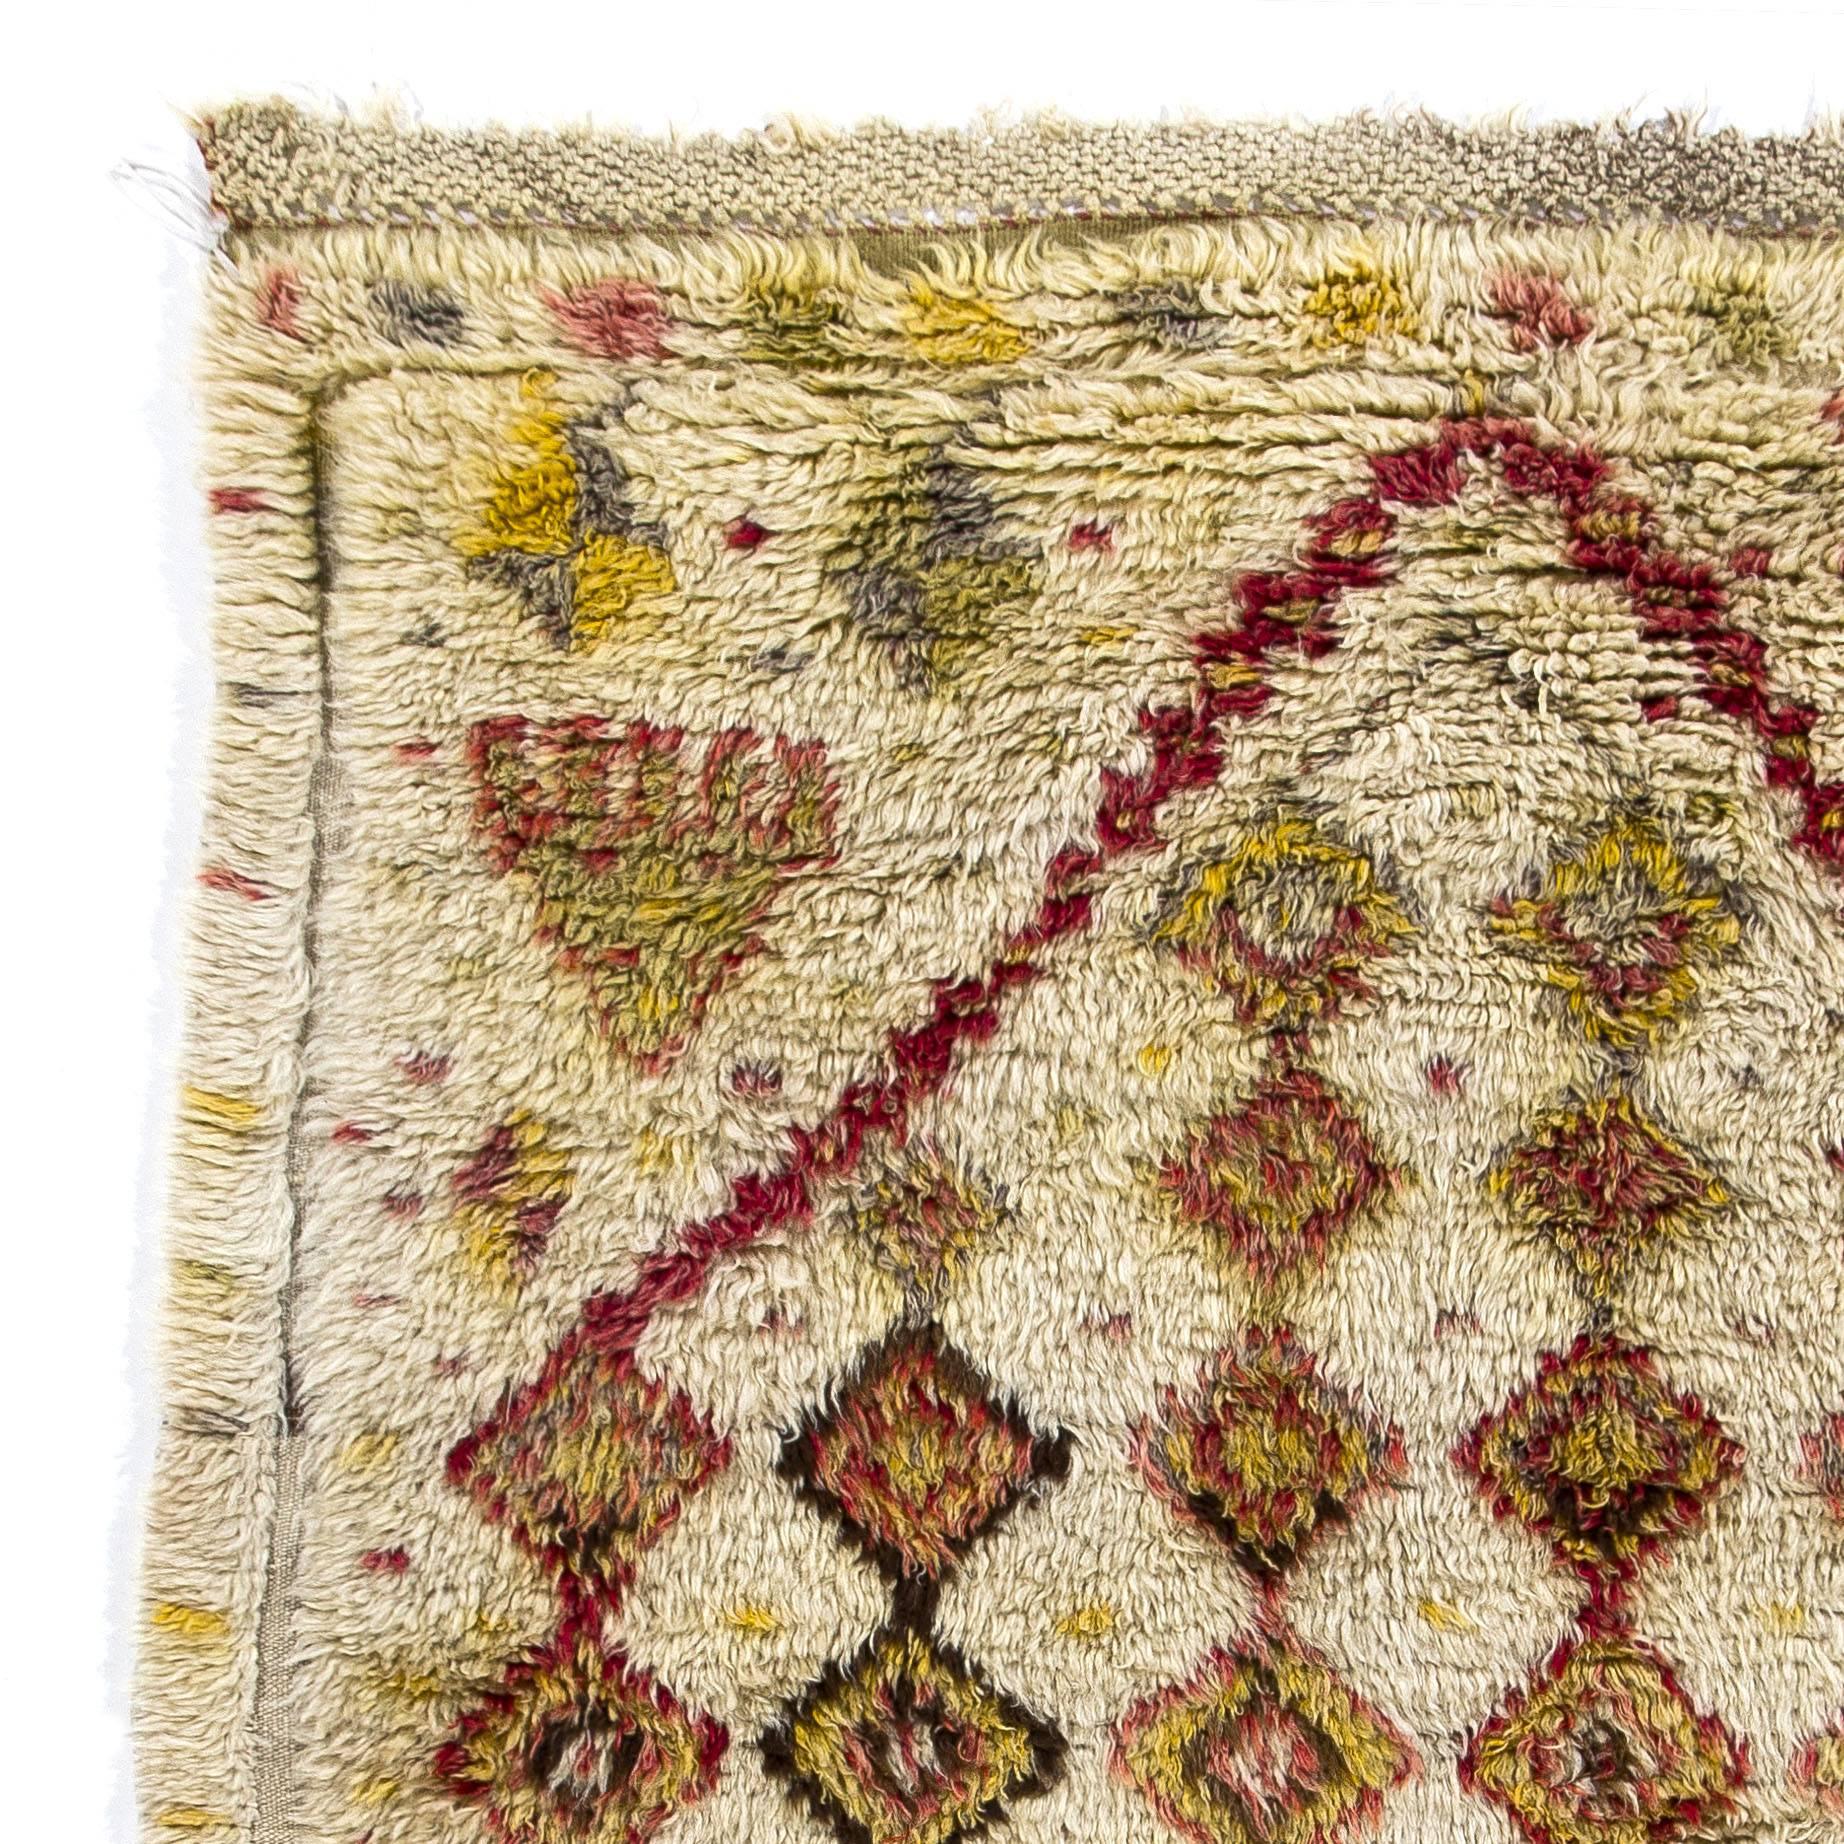 Tapis Tulu (à poils épais) du centre de la Turquie, unique en son genre, datant du début du 20e siècle, avec un motif en creux de losanges liés et colorés, 100 % laine.

Ces petits tapis rares ont été fabriqués pour l'usage quotidien des nomades